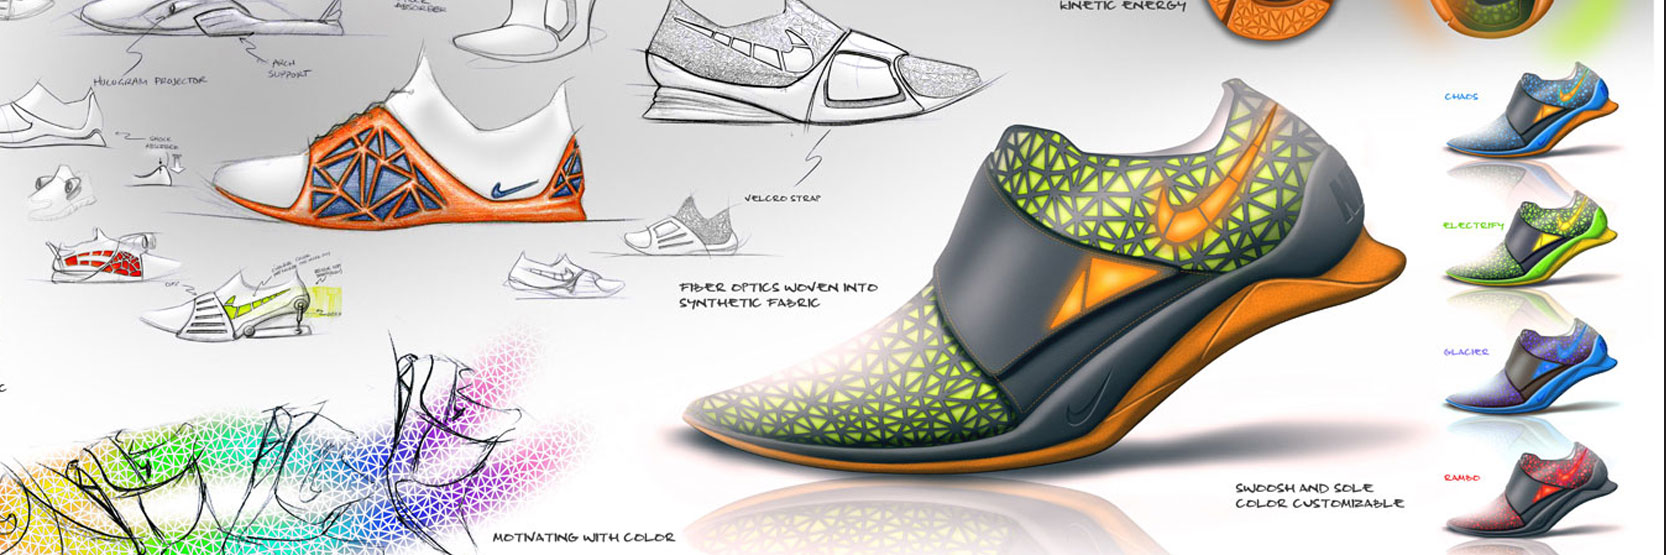 أبرز تصاميم الأحذية الرياضية الأنيقة والعمليّة للرجل